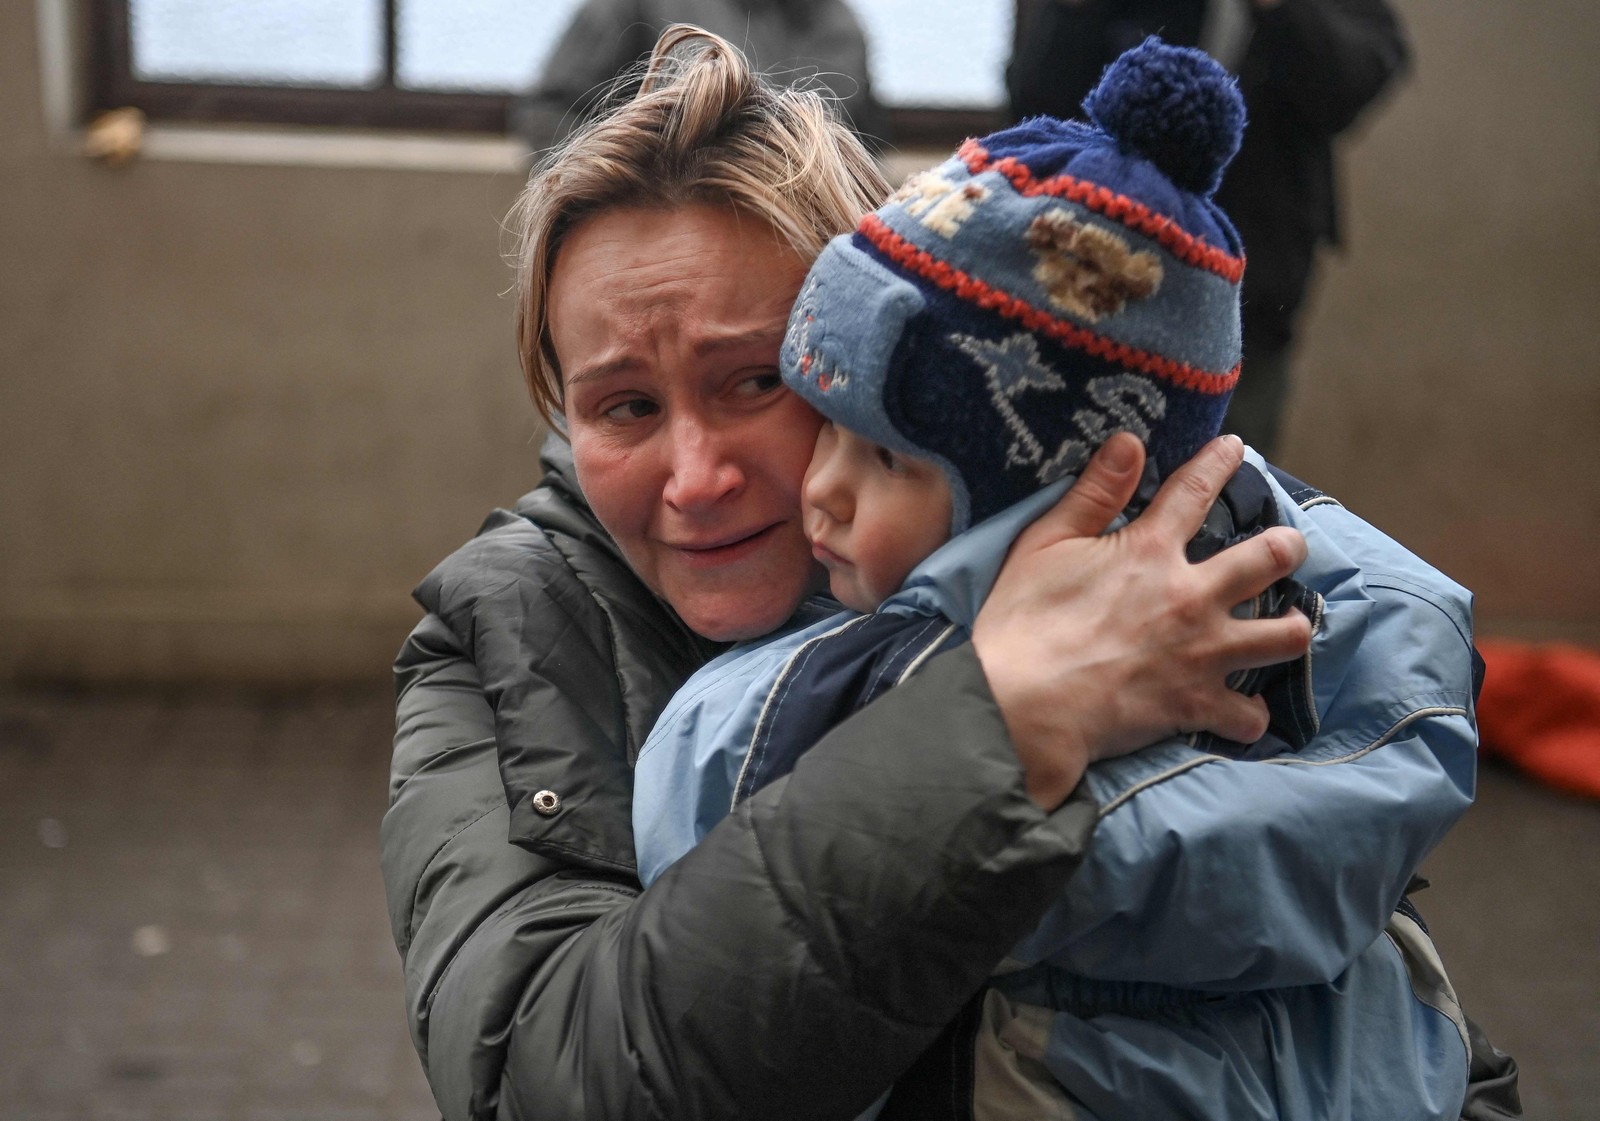 Mulher segura seu filho enquanto ela tenta embarcar em um trem gratuito para a Polônia em uma estação de trem em Lviv, oeste da Ucrânia — Foto: DANIEL LEAL / AFP